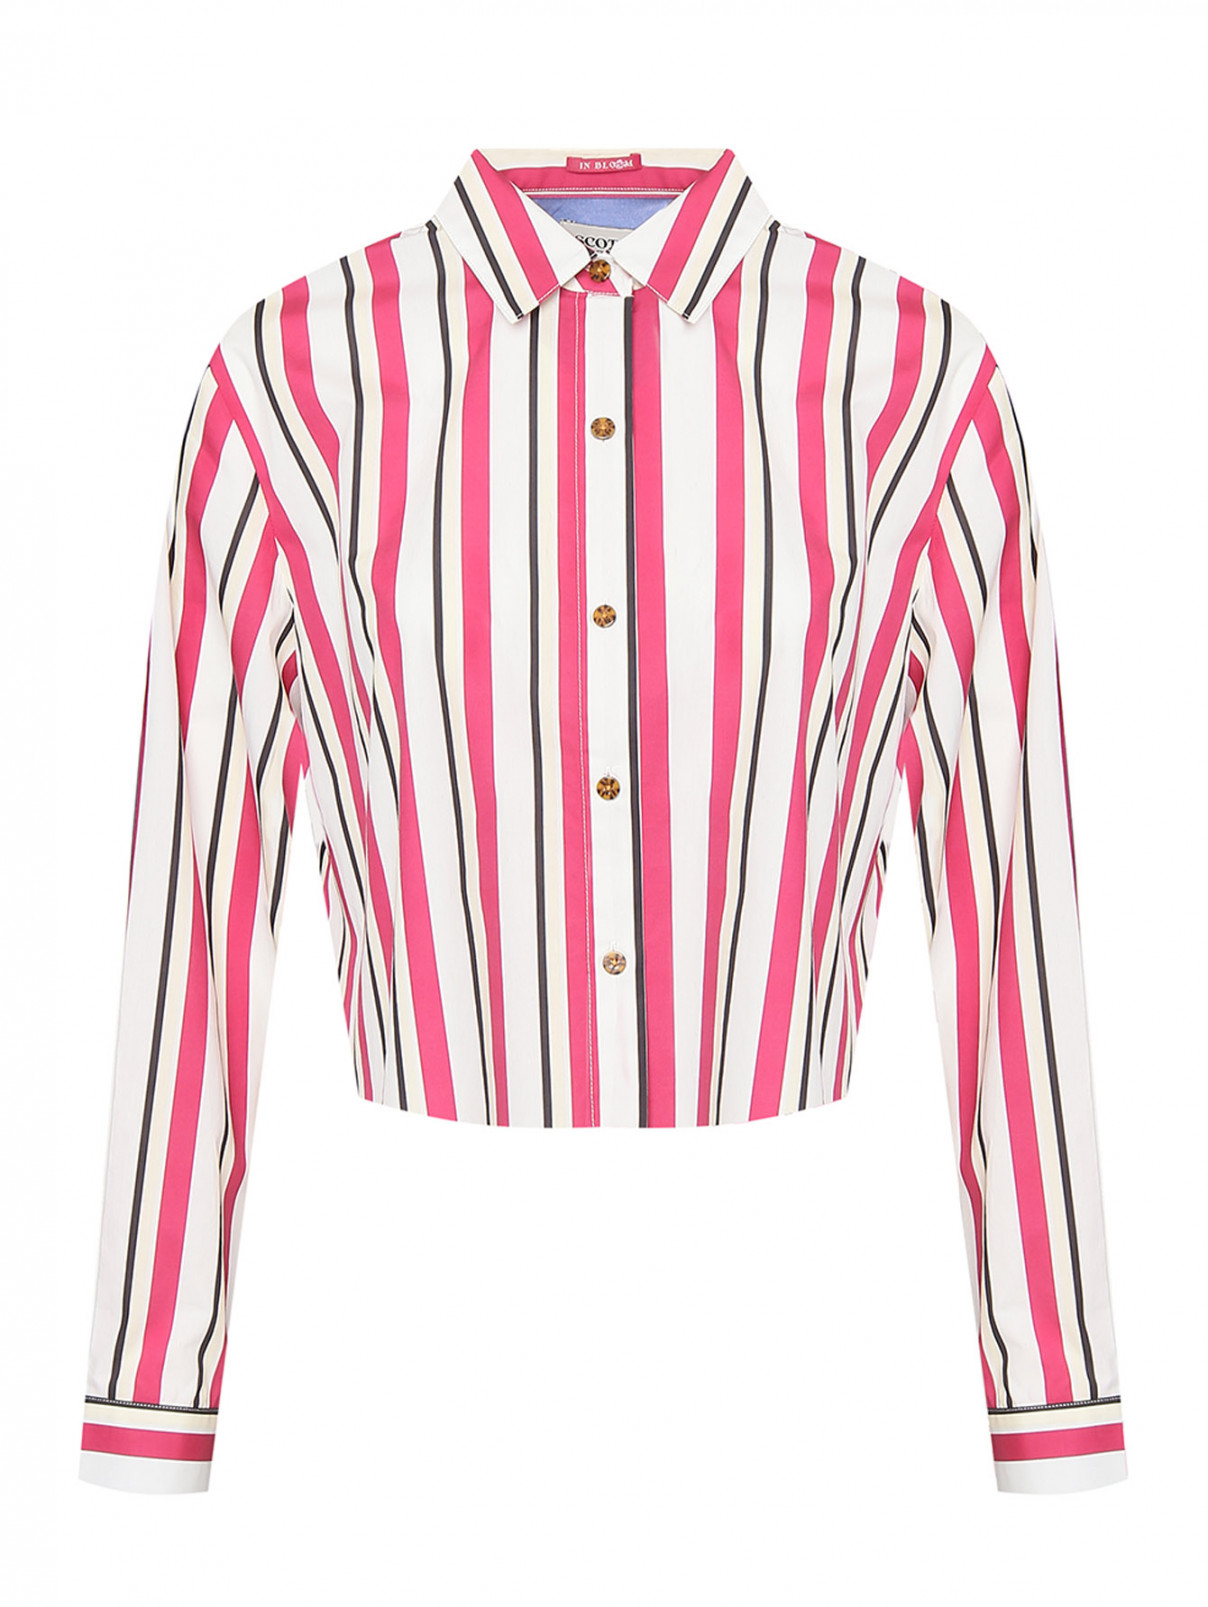 Укороченная рубашка с узором полоска Scotch & Soda  –  Общий вид  – Цвет:  Узор